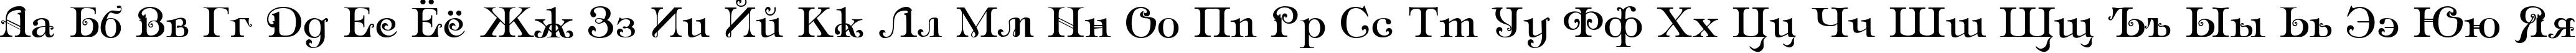 Пример написания русского алфавита шрифтом Ampir Deco